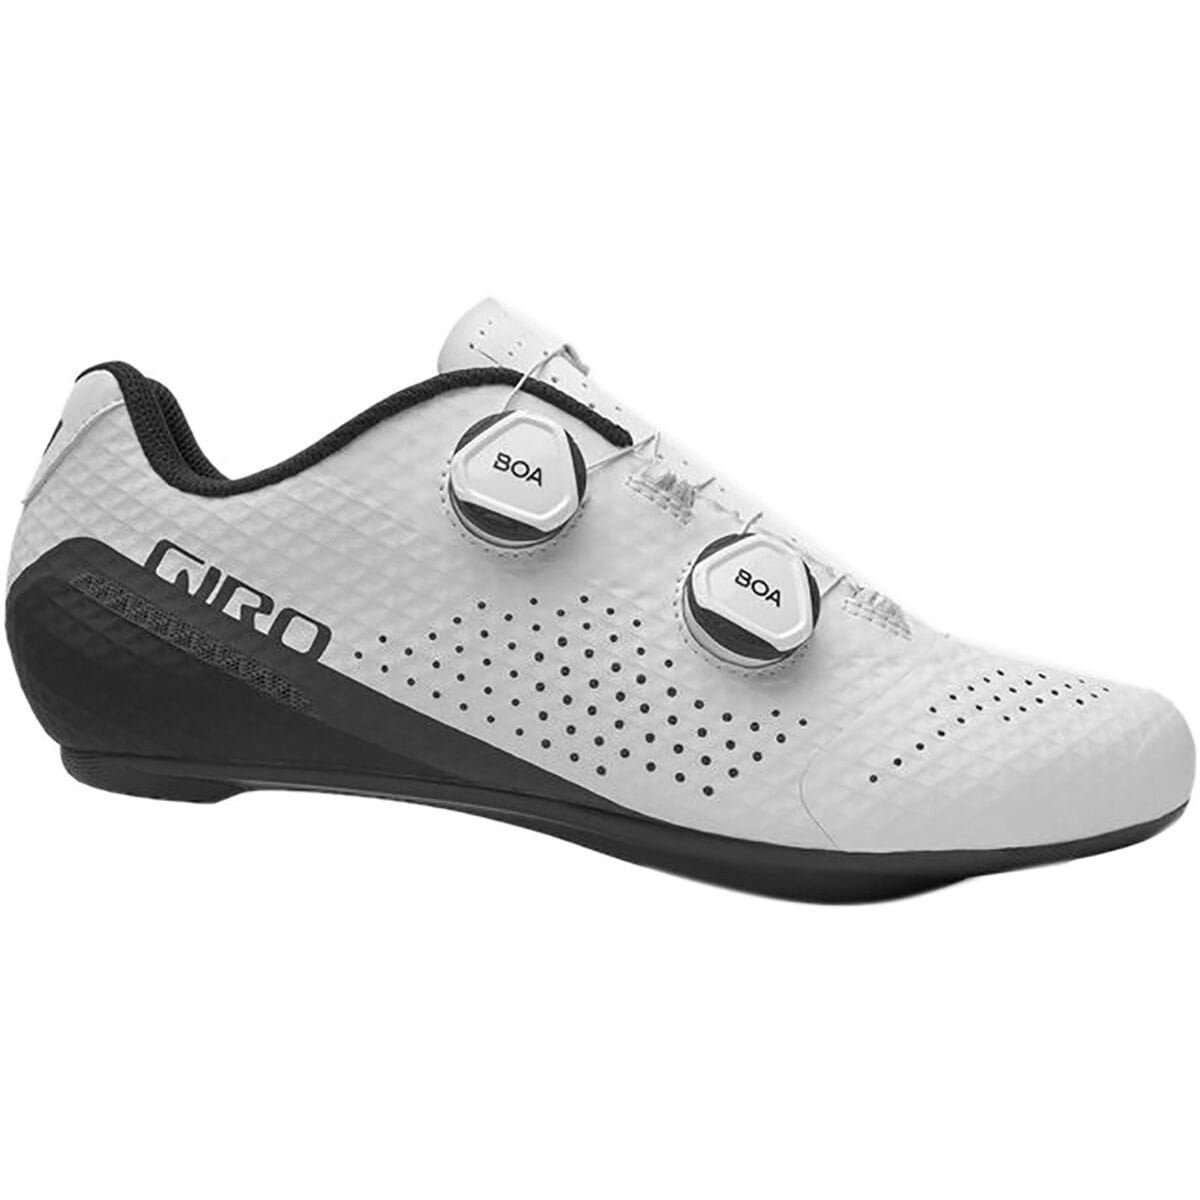 Giro Regime Cycling Shoe - Men's White, 43.0